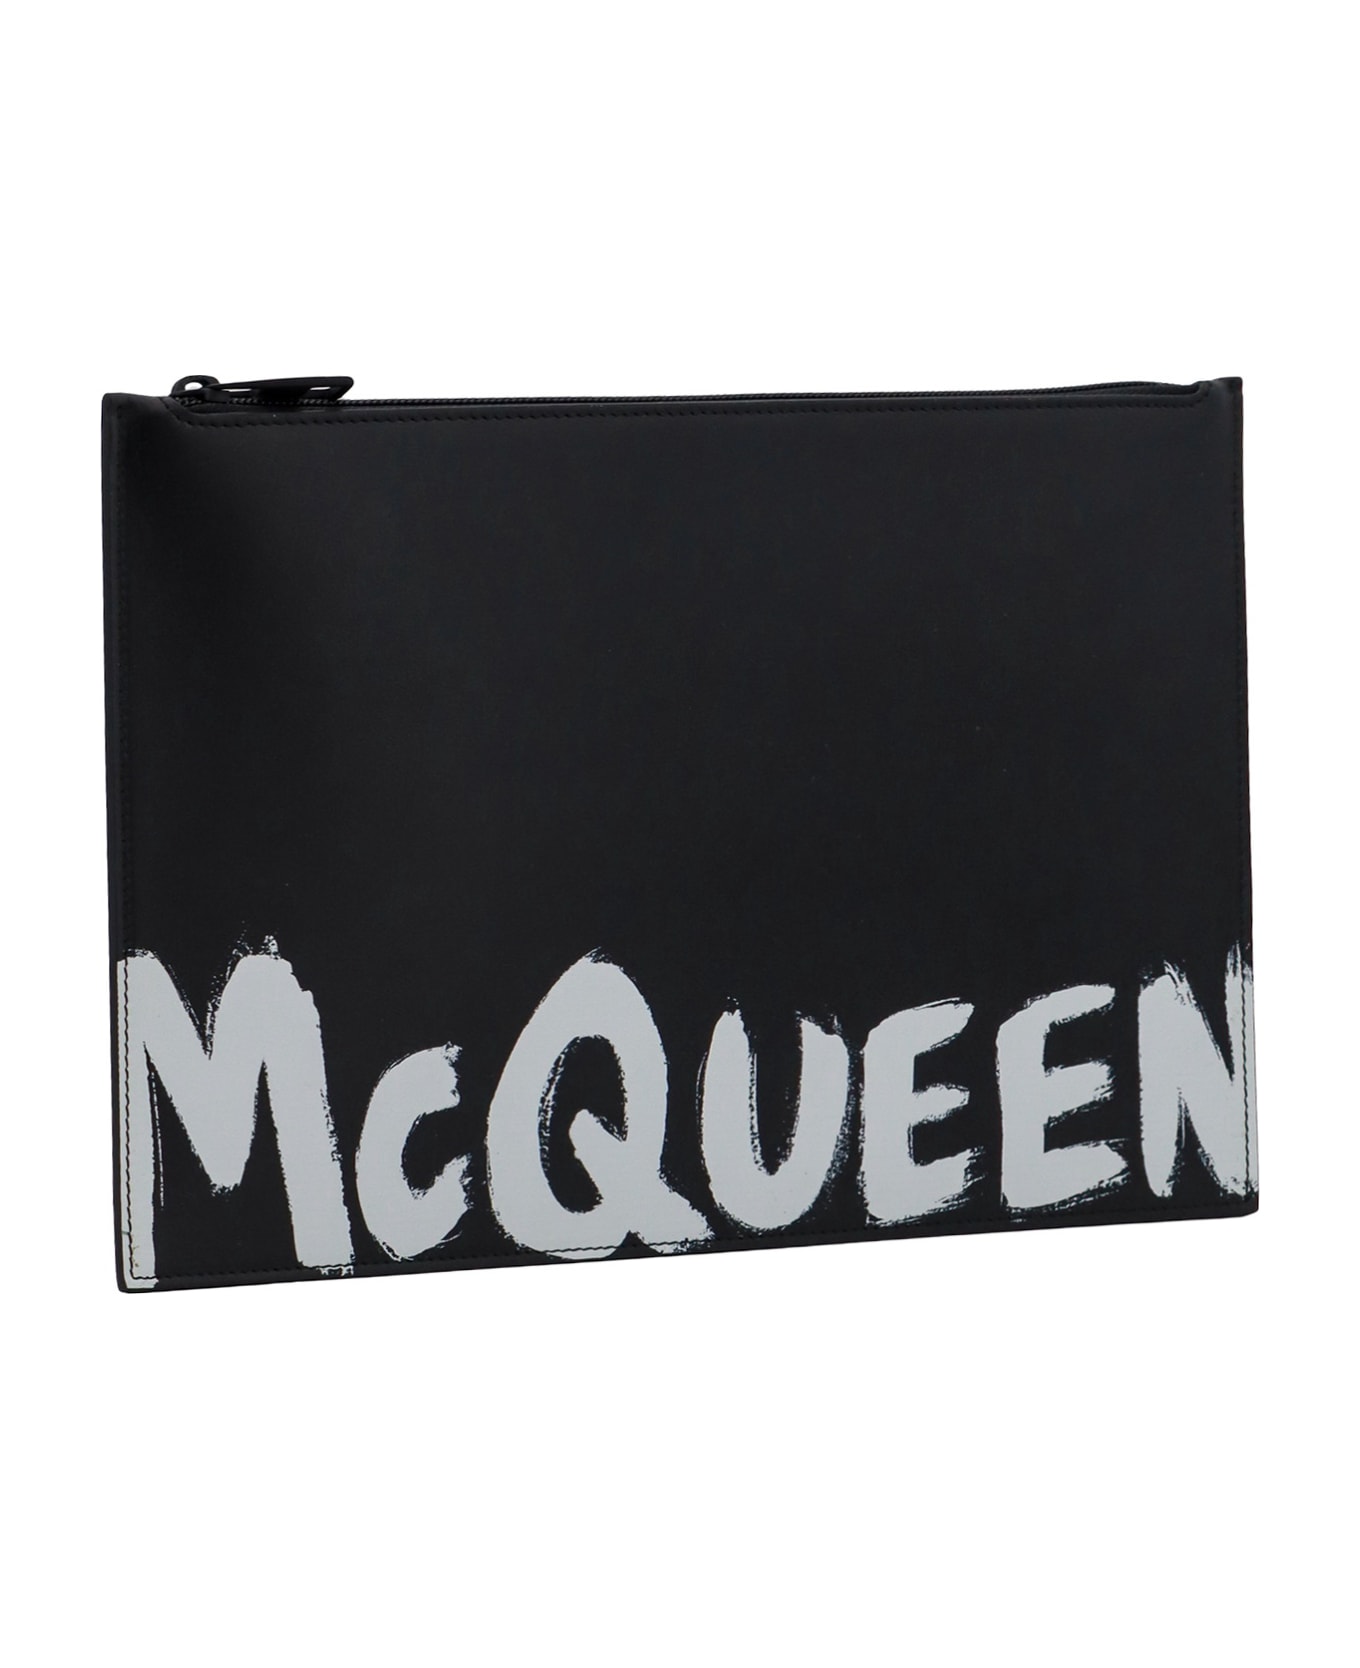 Alexander McQueen Graffiti Clutch Bag - Black バッグ